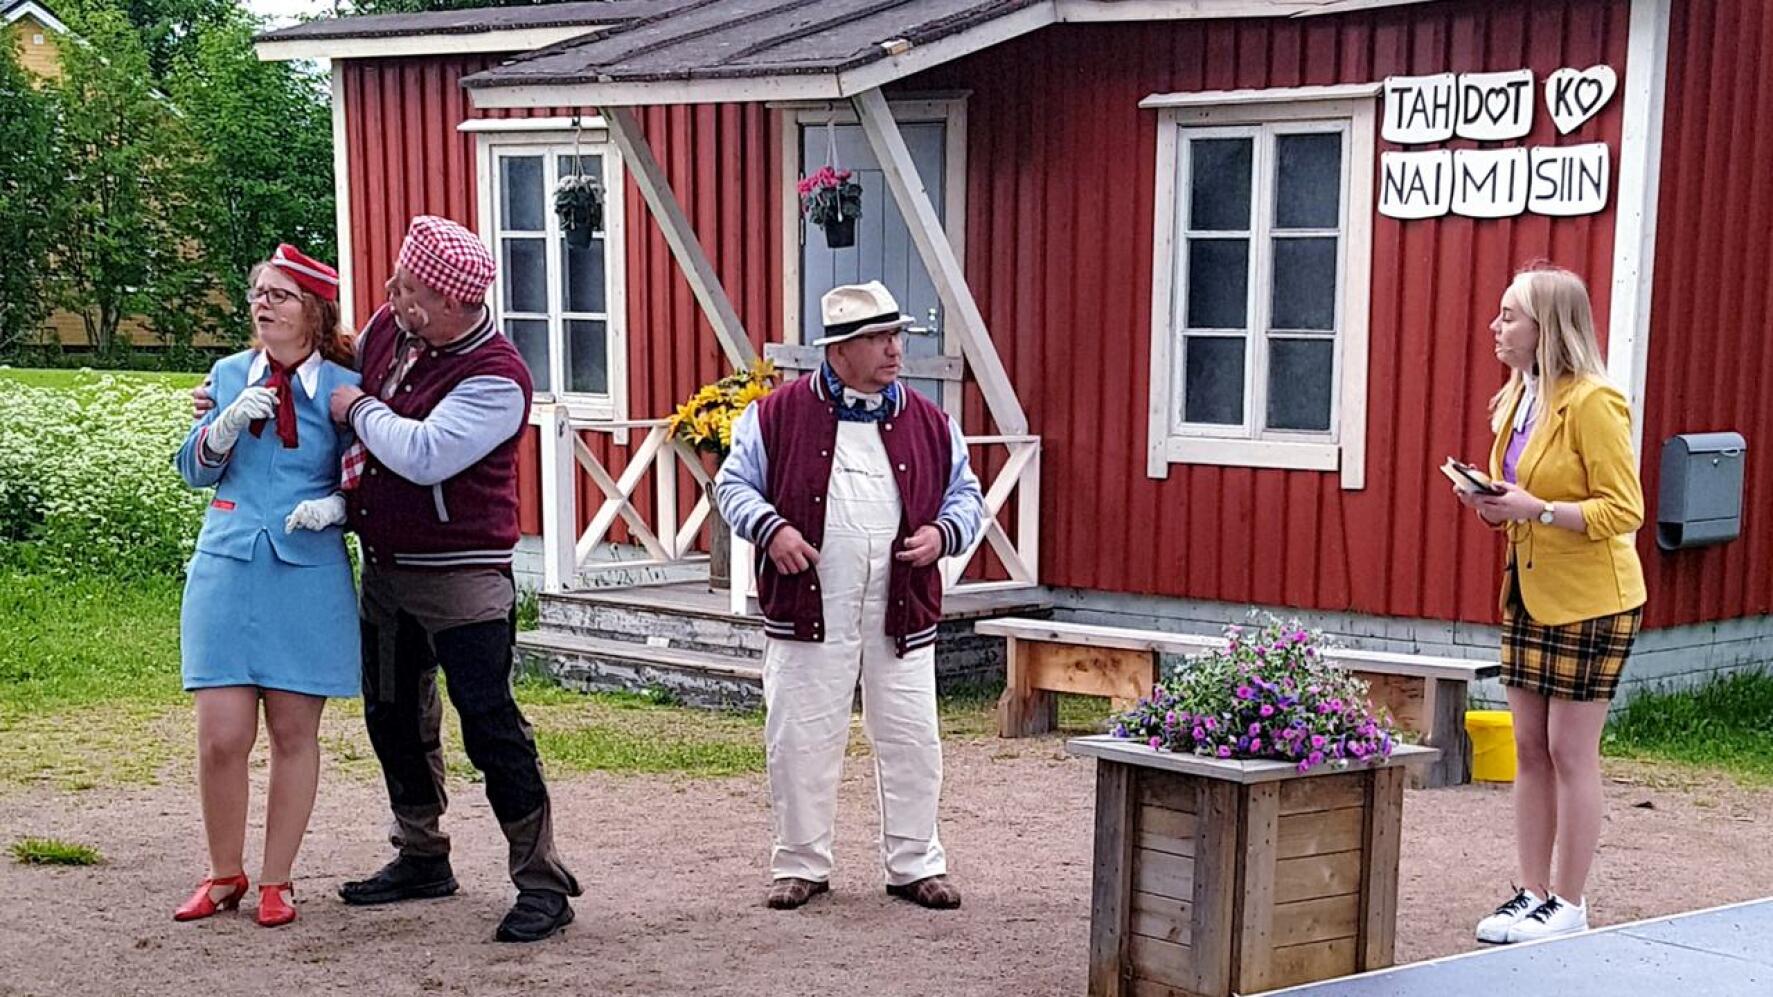 Kesäinen häätapahtuma saa yllättävän käänteen, kun hääpari puuttuu. Ohjaaja Matti Juntunen on pyrkinyt luomaan näyttämölle monipuolisia hahmoja.